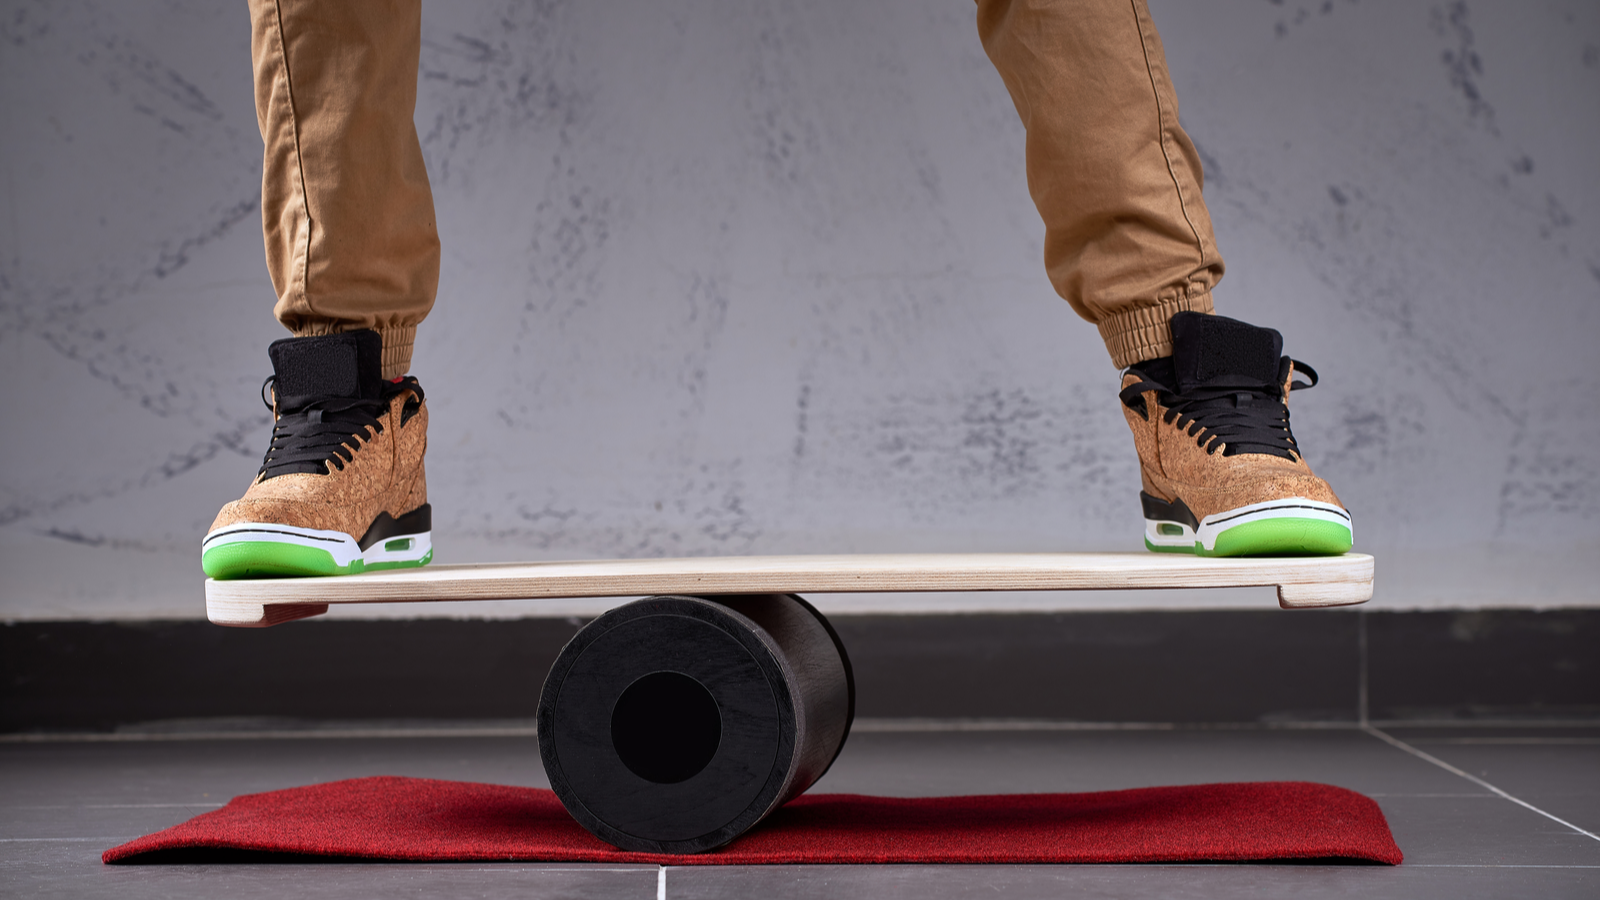 Sàn gỗ hình bầu dục dùng cho ván thăng bằng, con lăn nhựa đặc dùng cho ván thăng bằng, người mang giày trượt băng nghệ thuật đứng và giữ thăng bằng trên boong